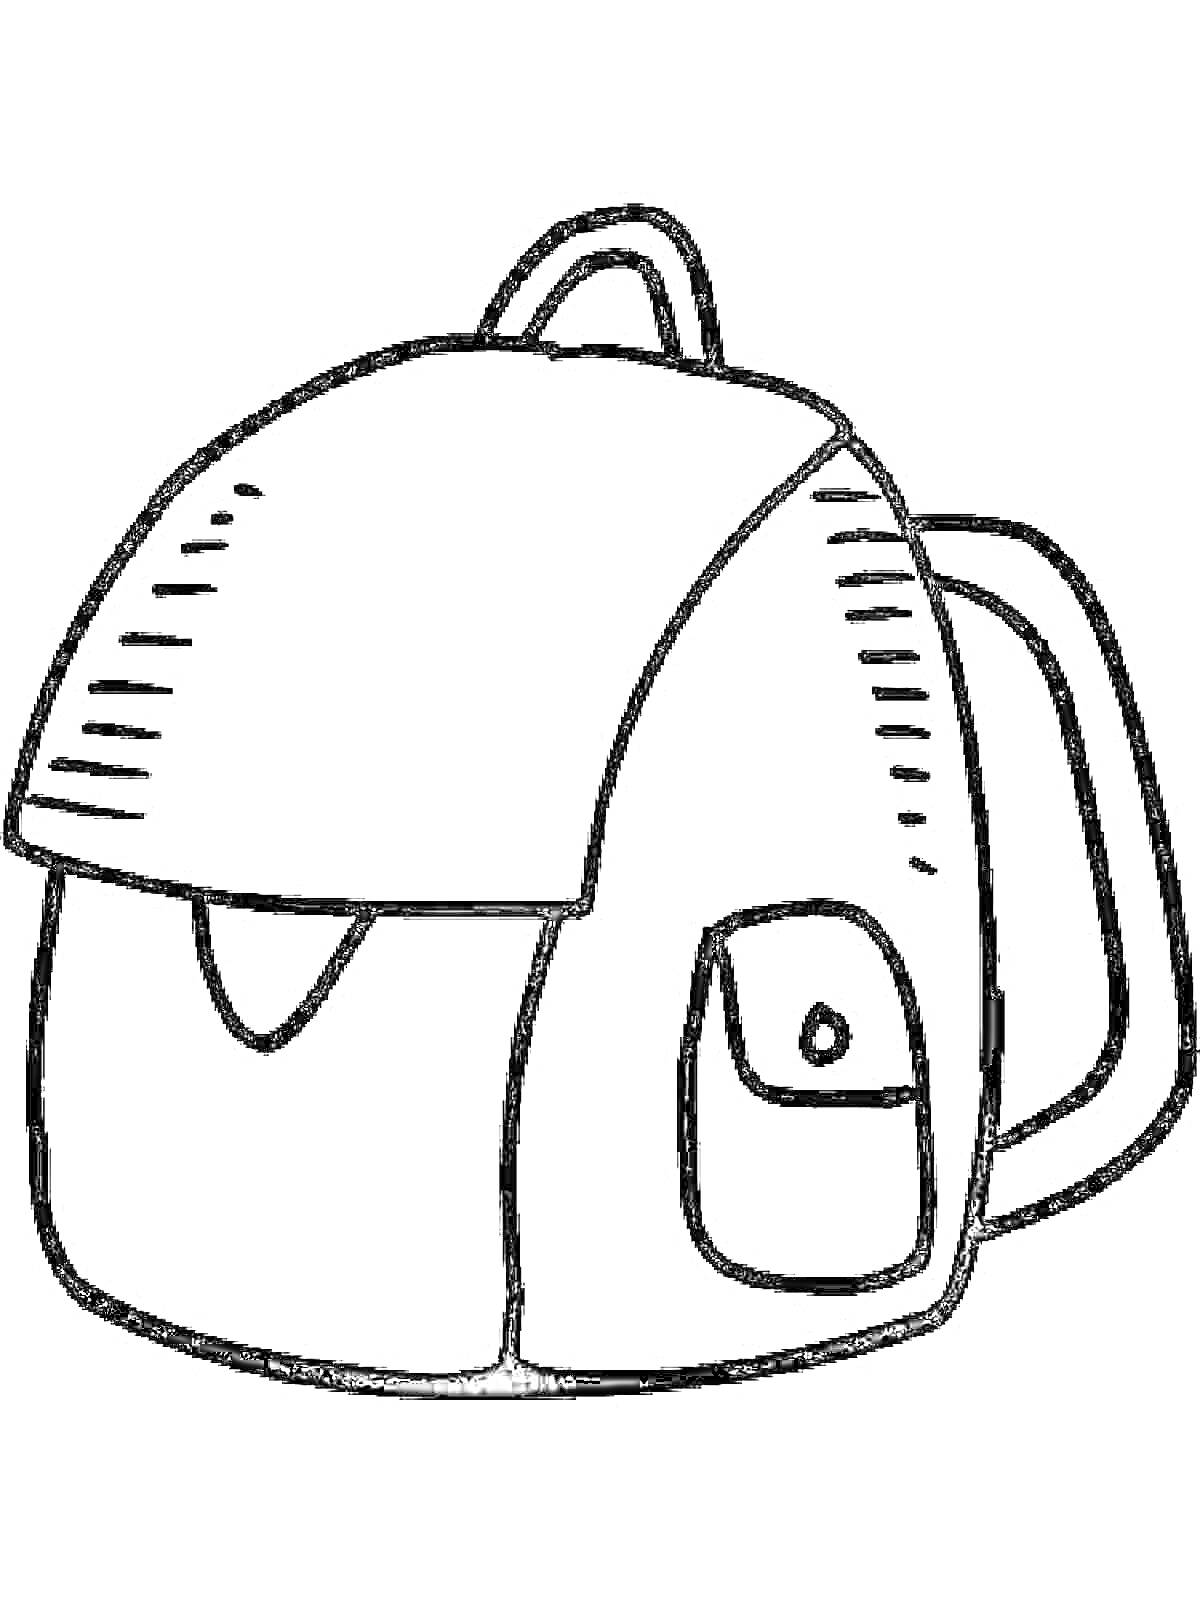 Рюкзак с передним карманом и закругленным верхом